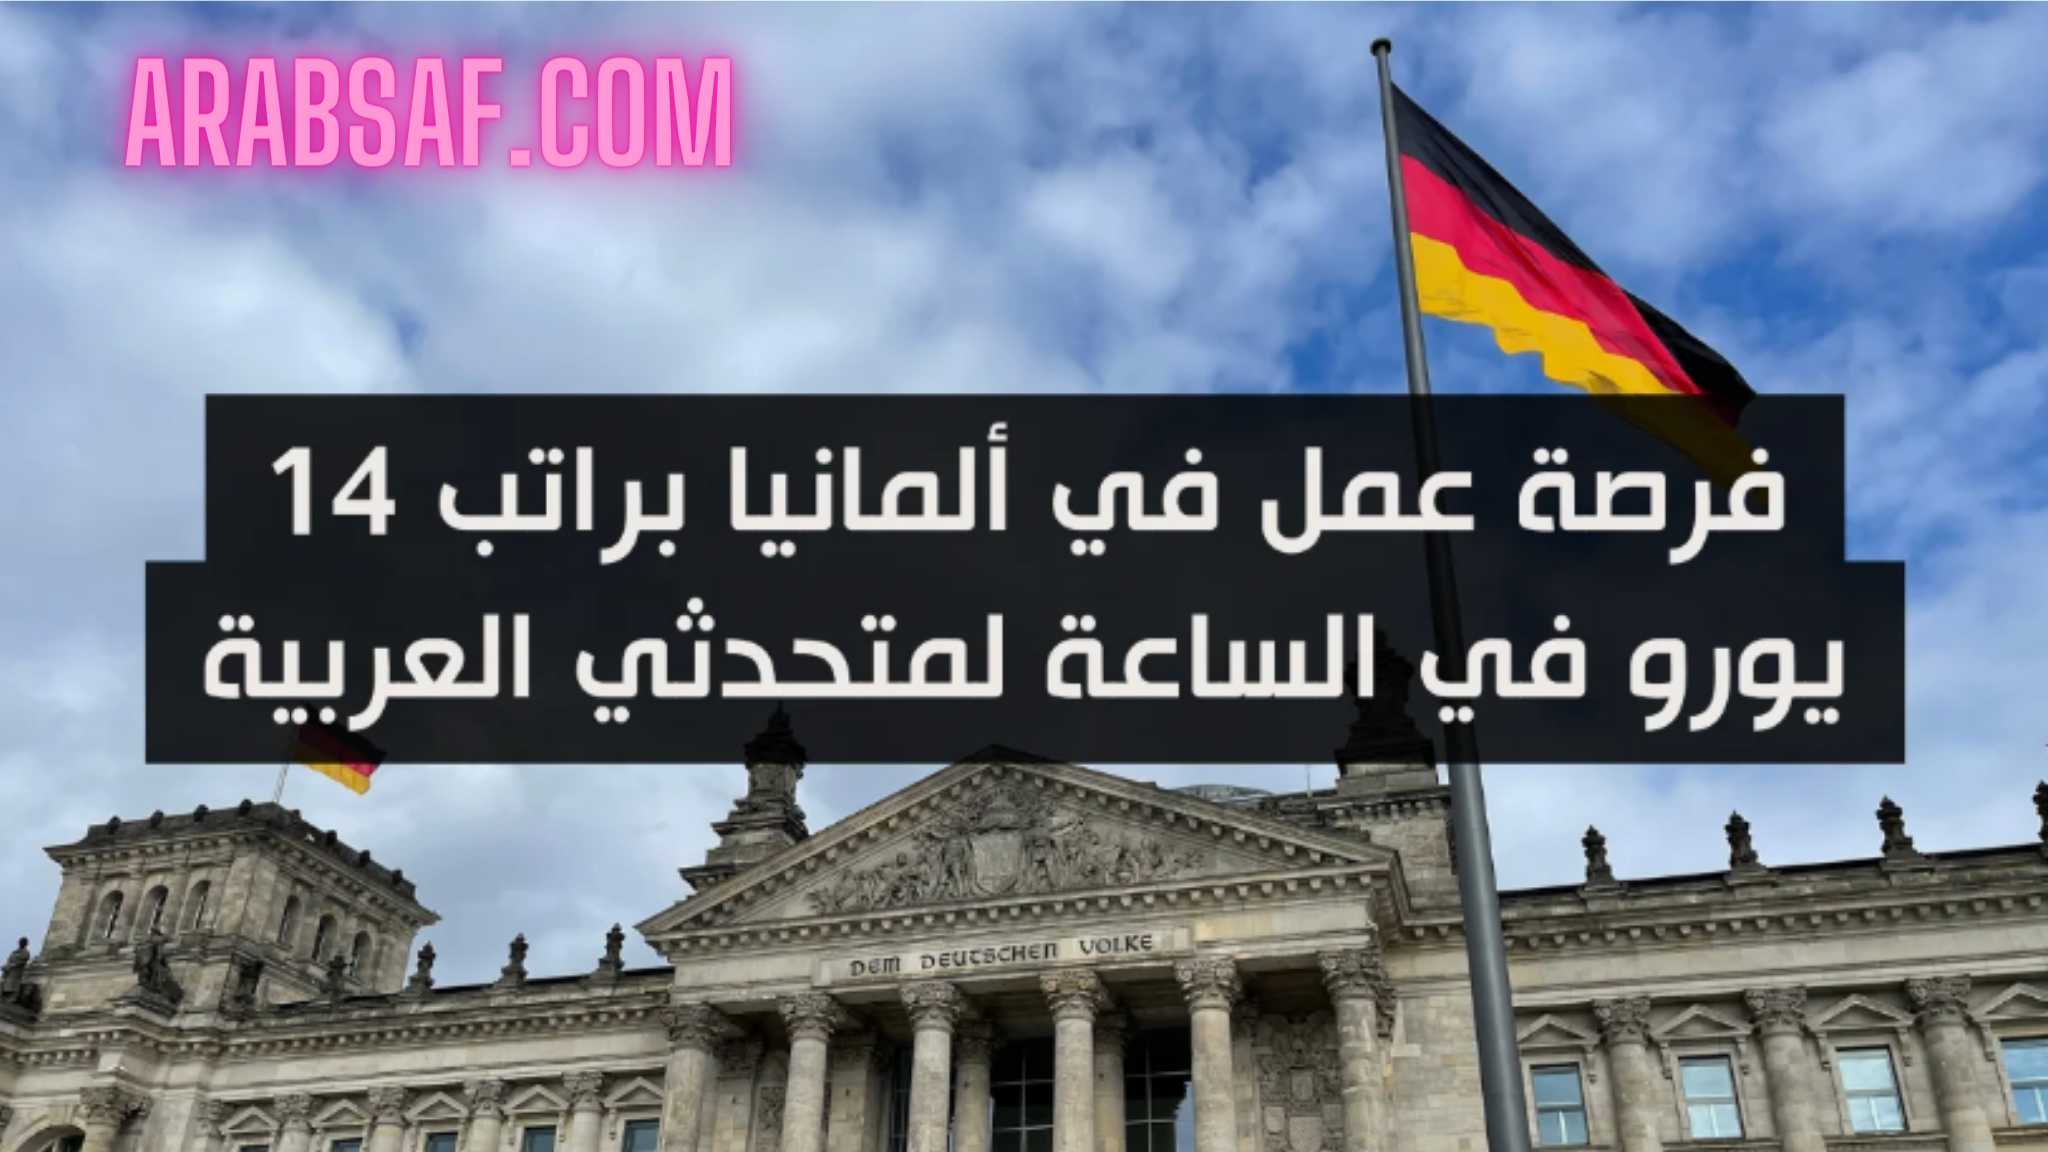 فرصة عمل في ألمانيا براتب 14 يورو في الساعة لمتحدثي العربية